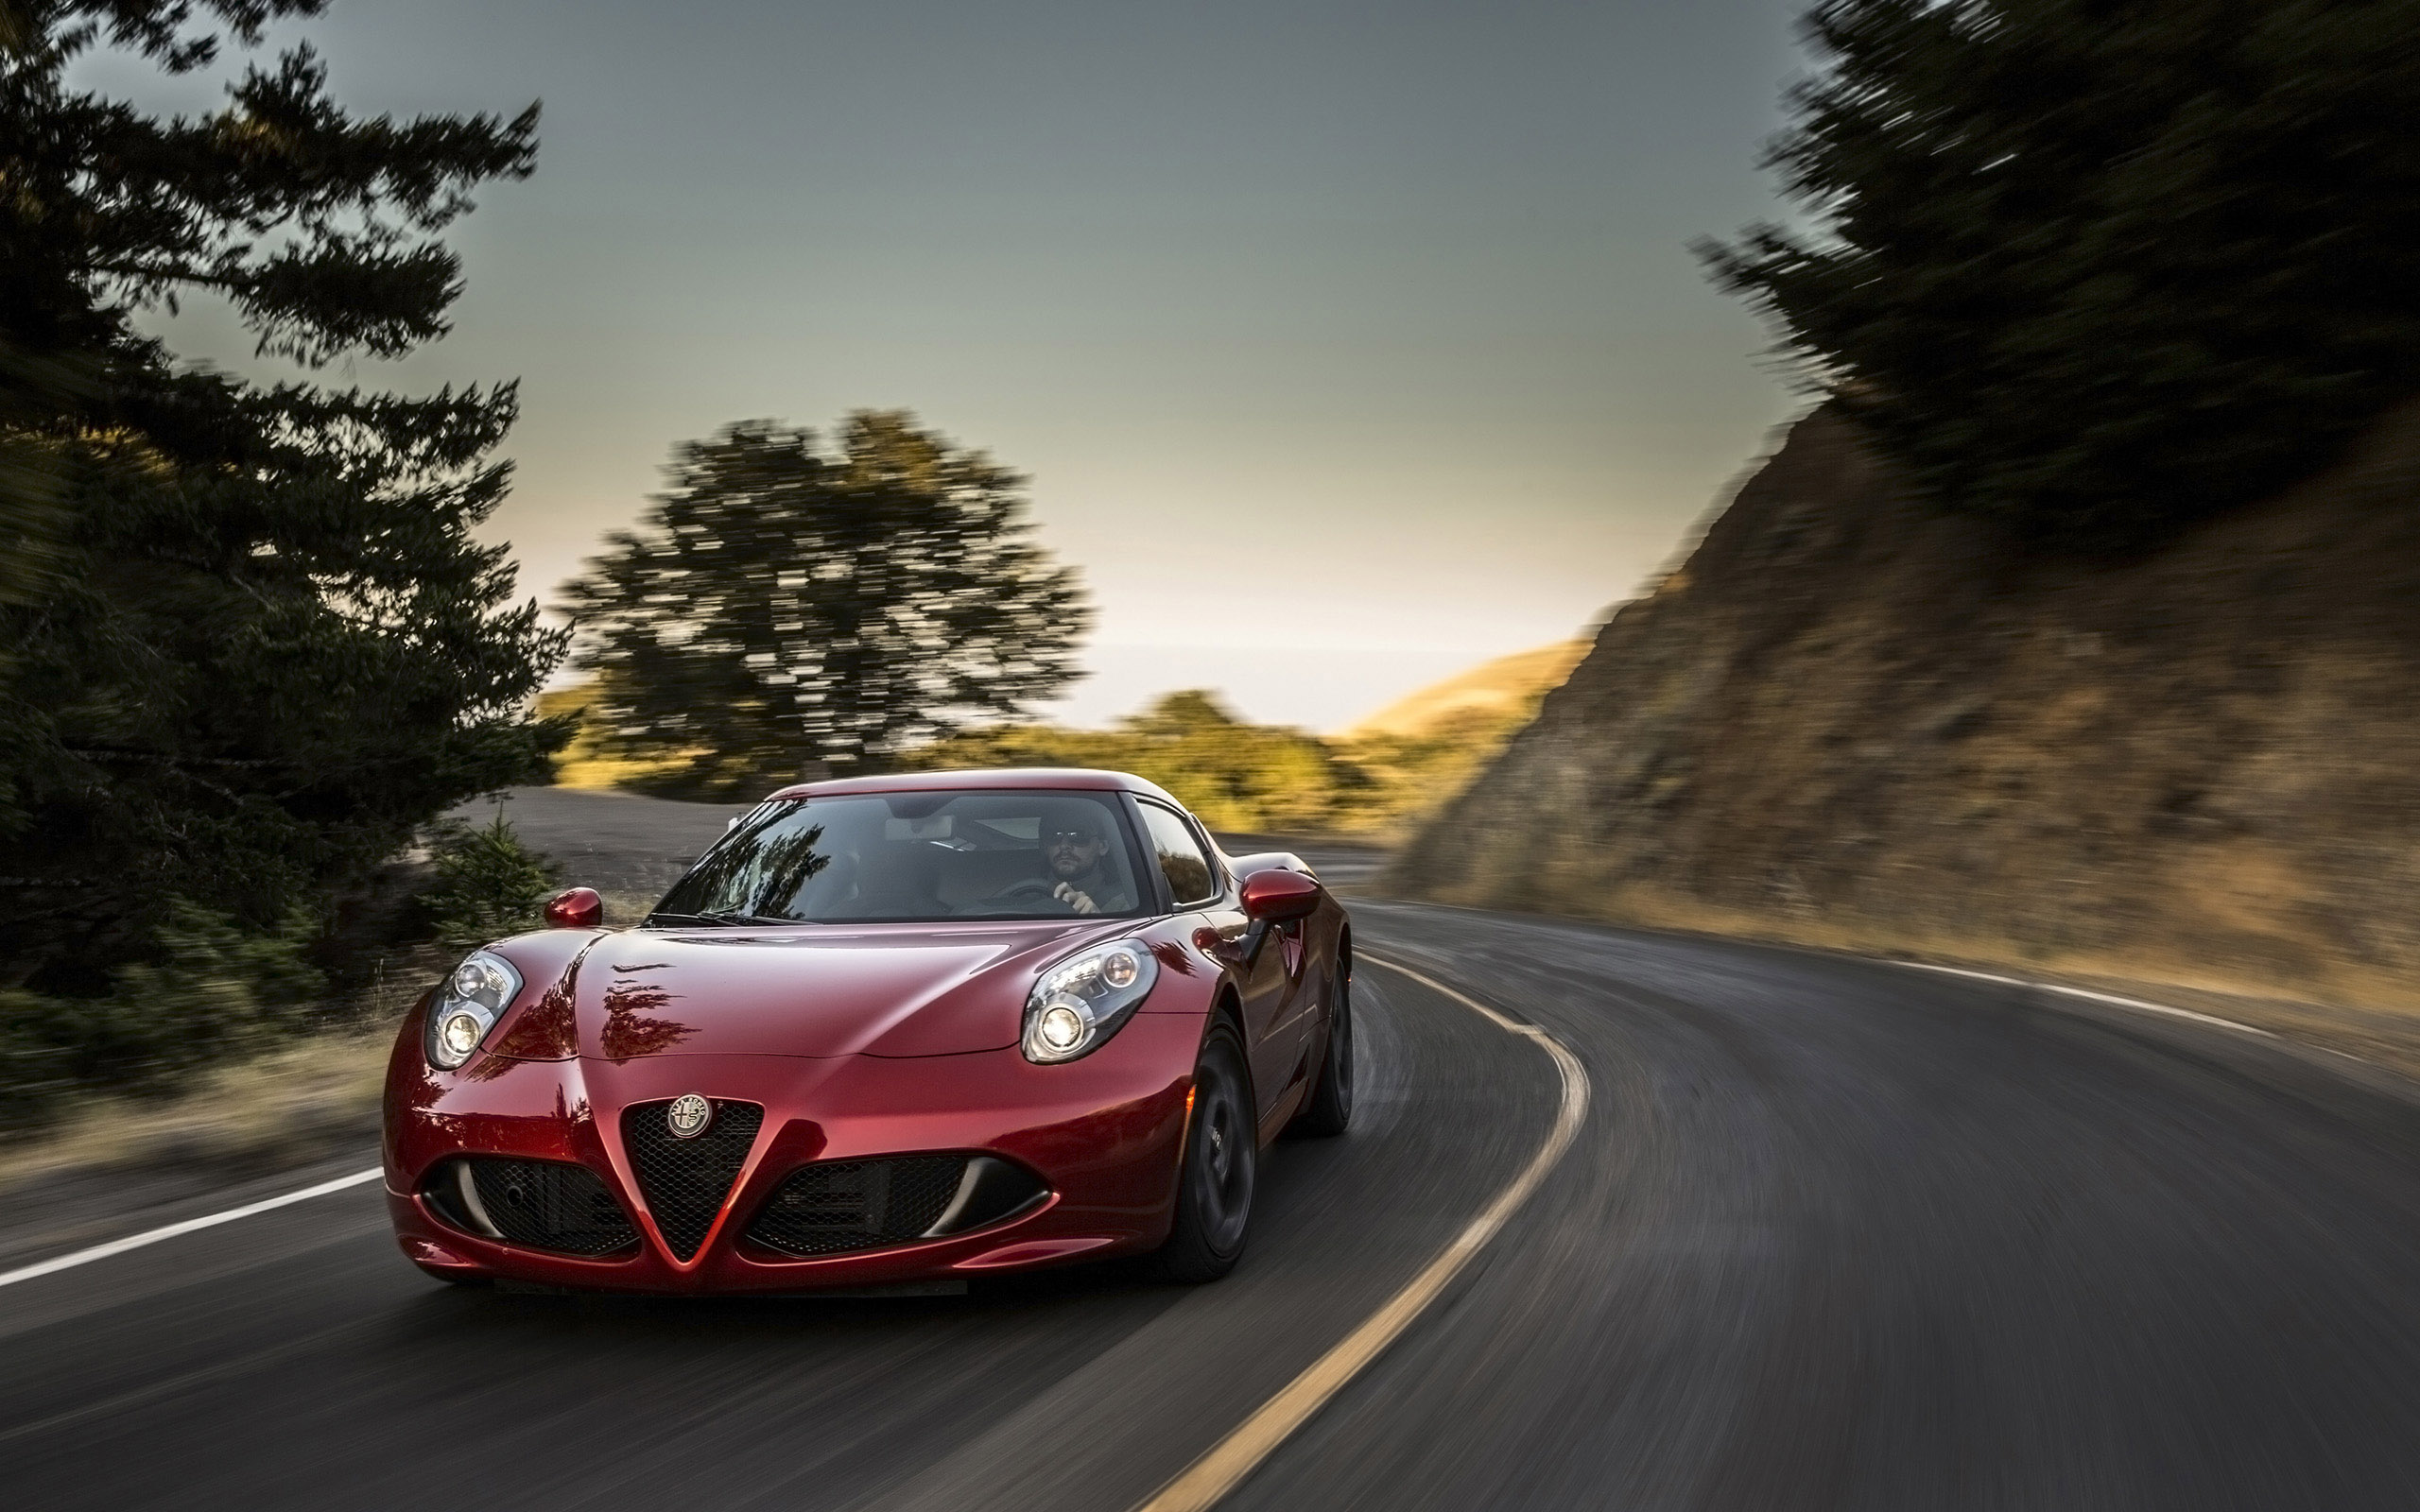 2015 Alfa Romeo 4C Coupe US-Version - HD Pictures @ carsinvasion.com